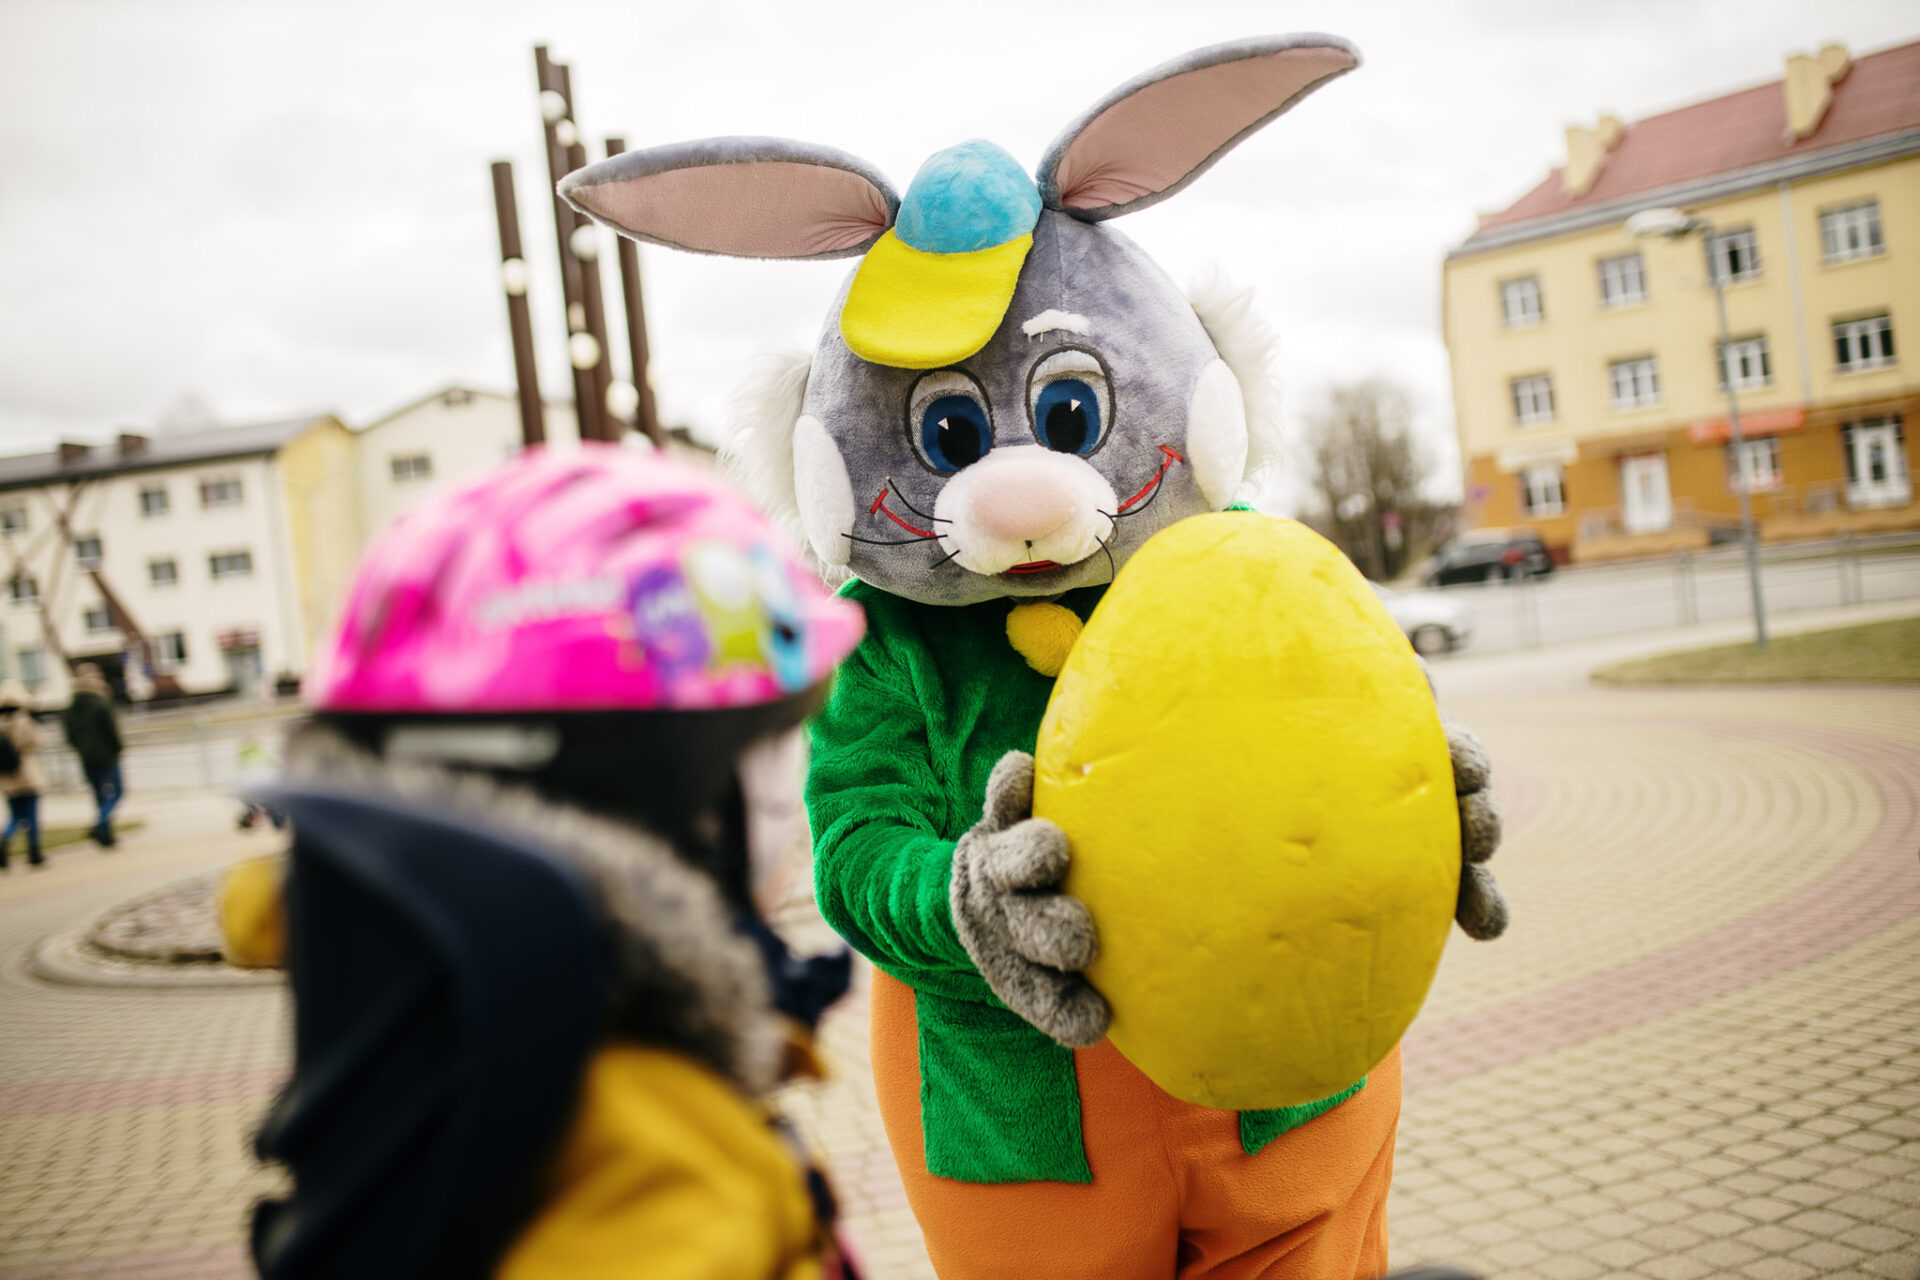 Otrajās Lieldienās Valmierā notiks tematiska pastaiga “Zaķim pa pēdām” un koncerts